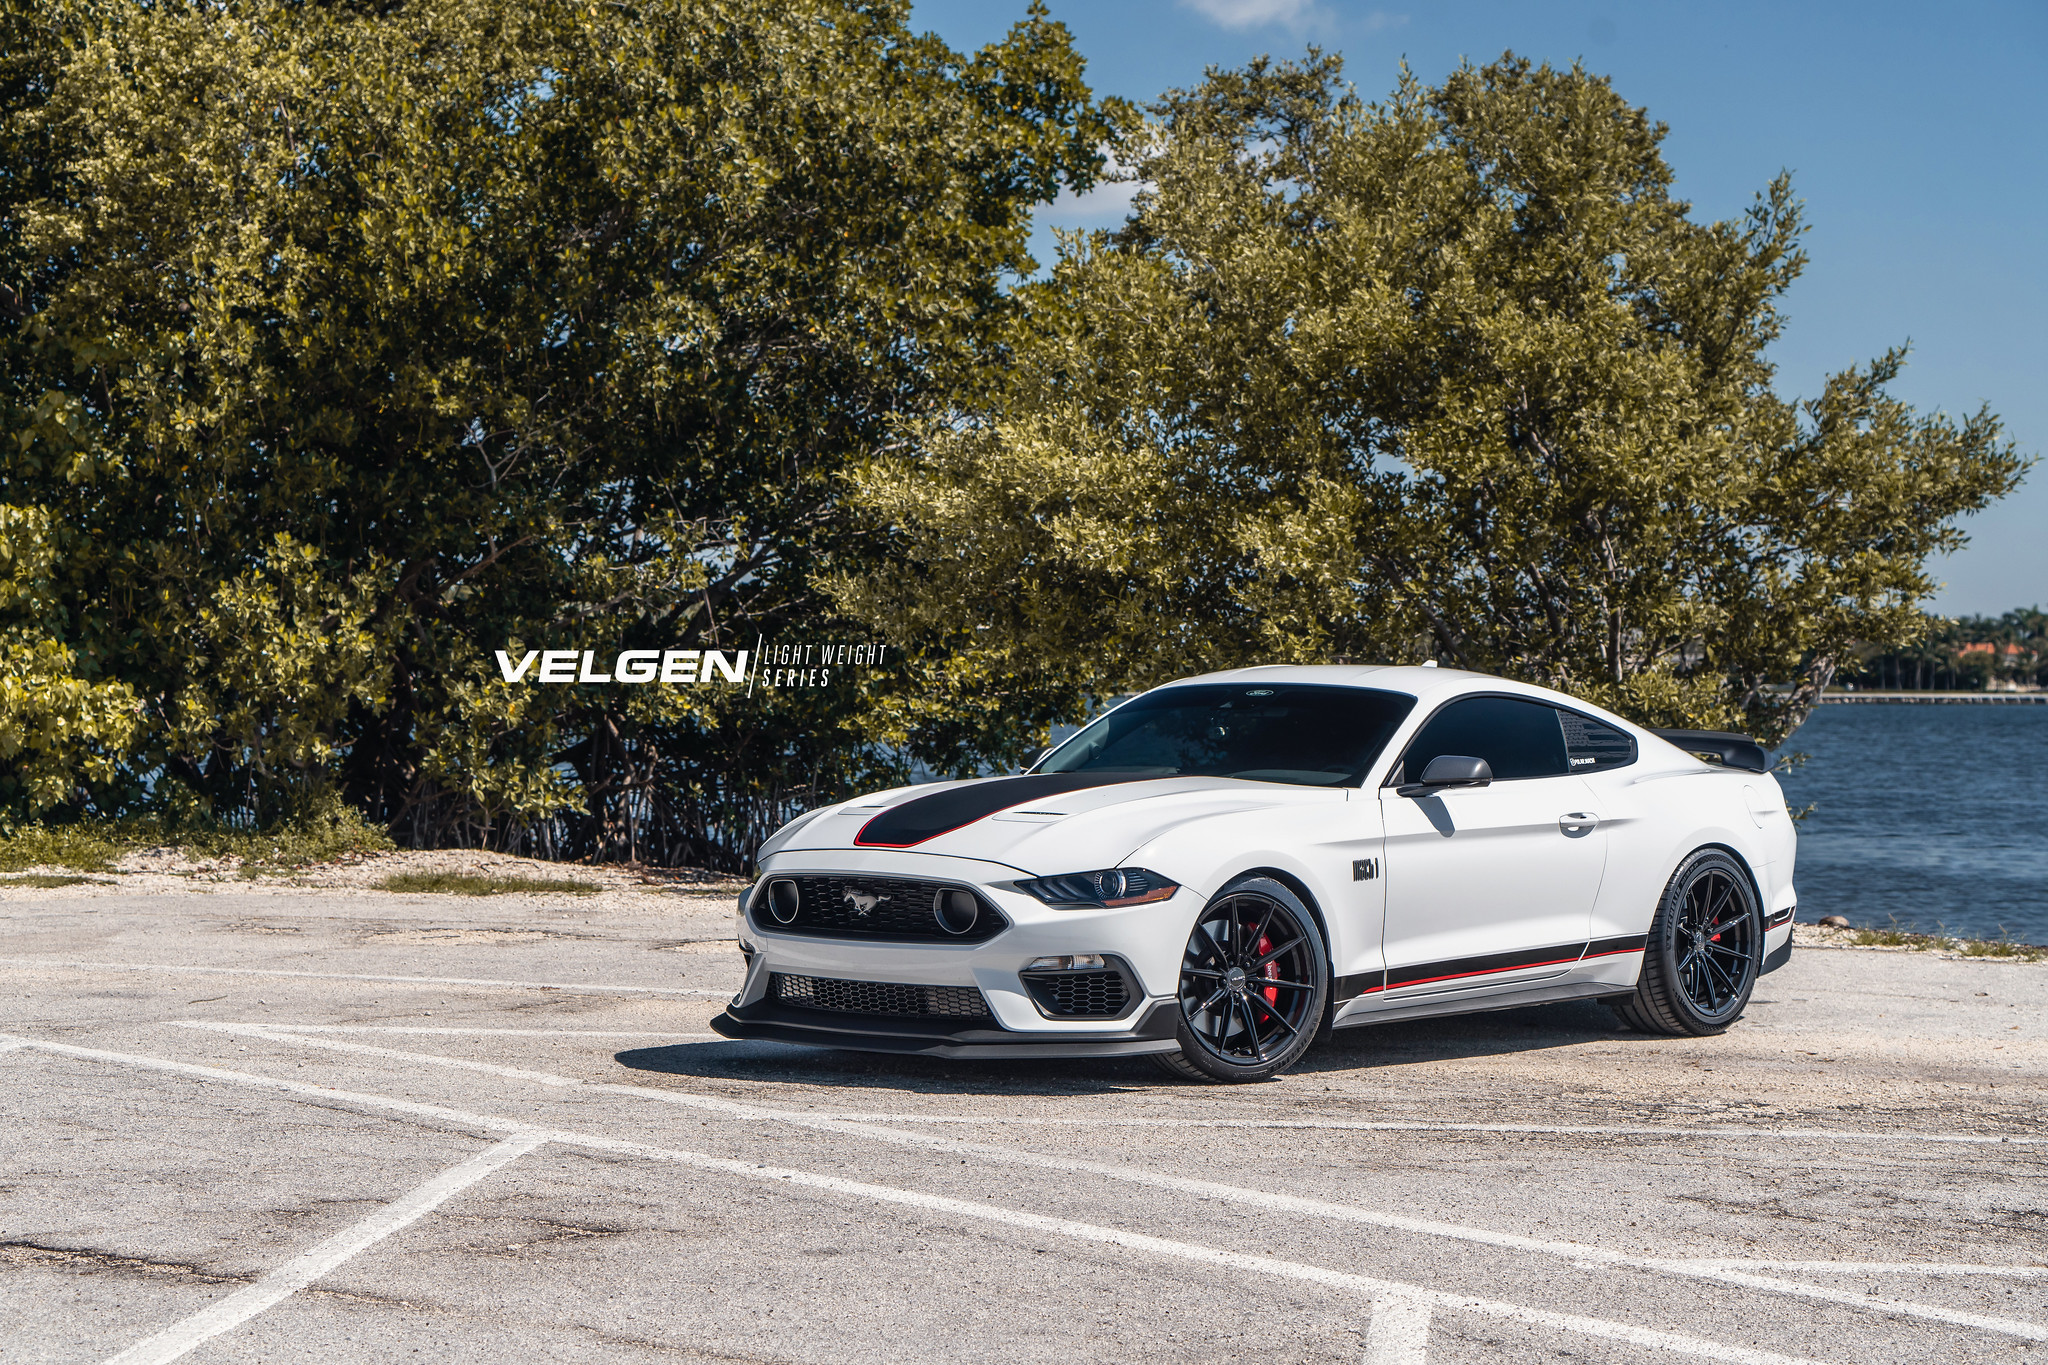 S650 Mustang Velgen wheels for your S650 Mustang | Vibe Motorsports 52943228249_867e7686d8_k